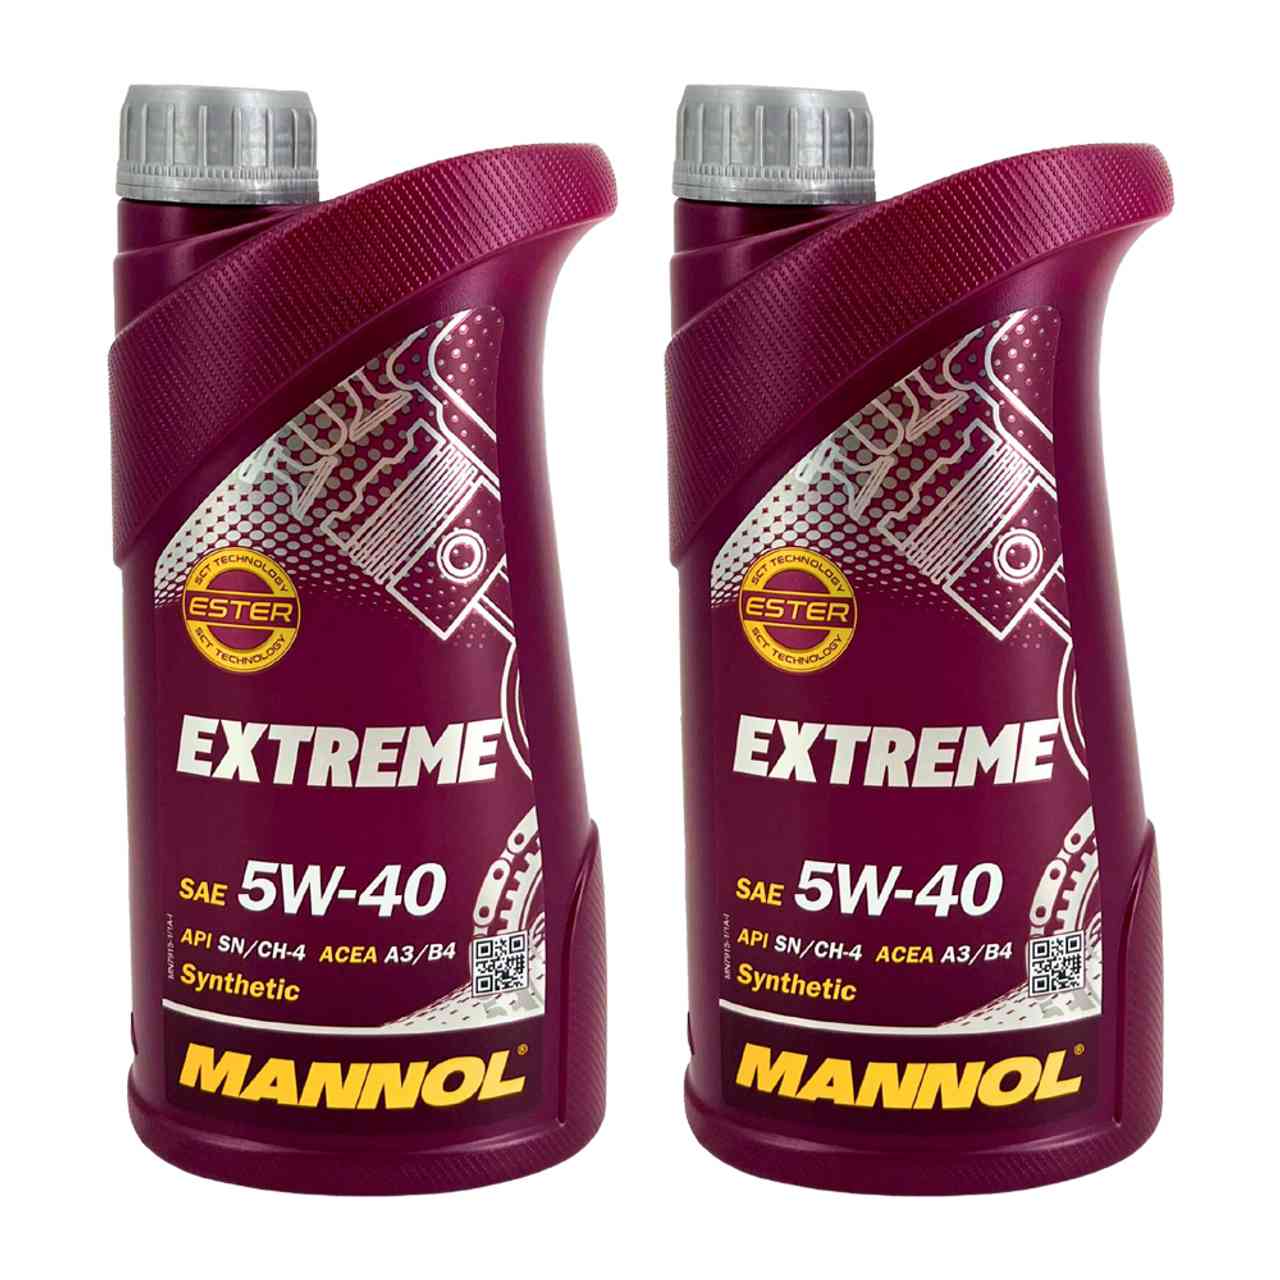 Mannol Extreme 5W-40 2x1 Liter